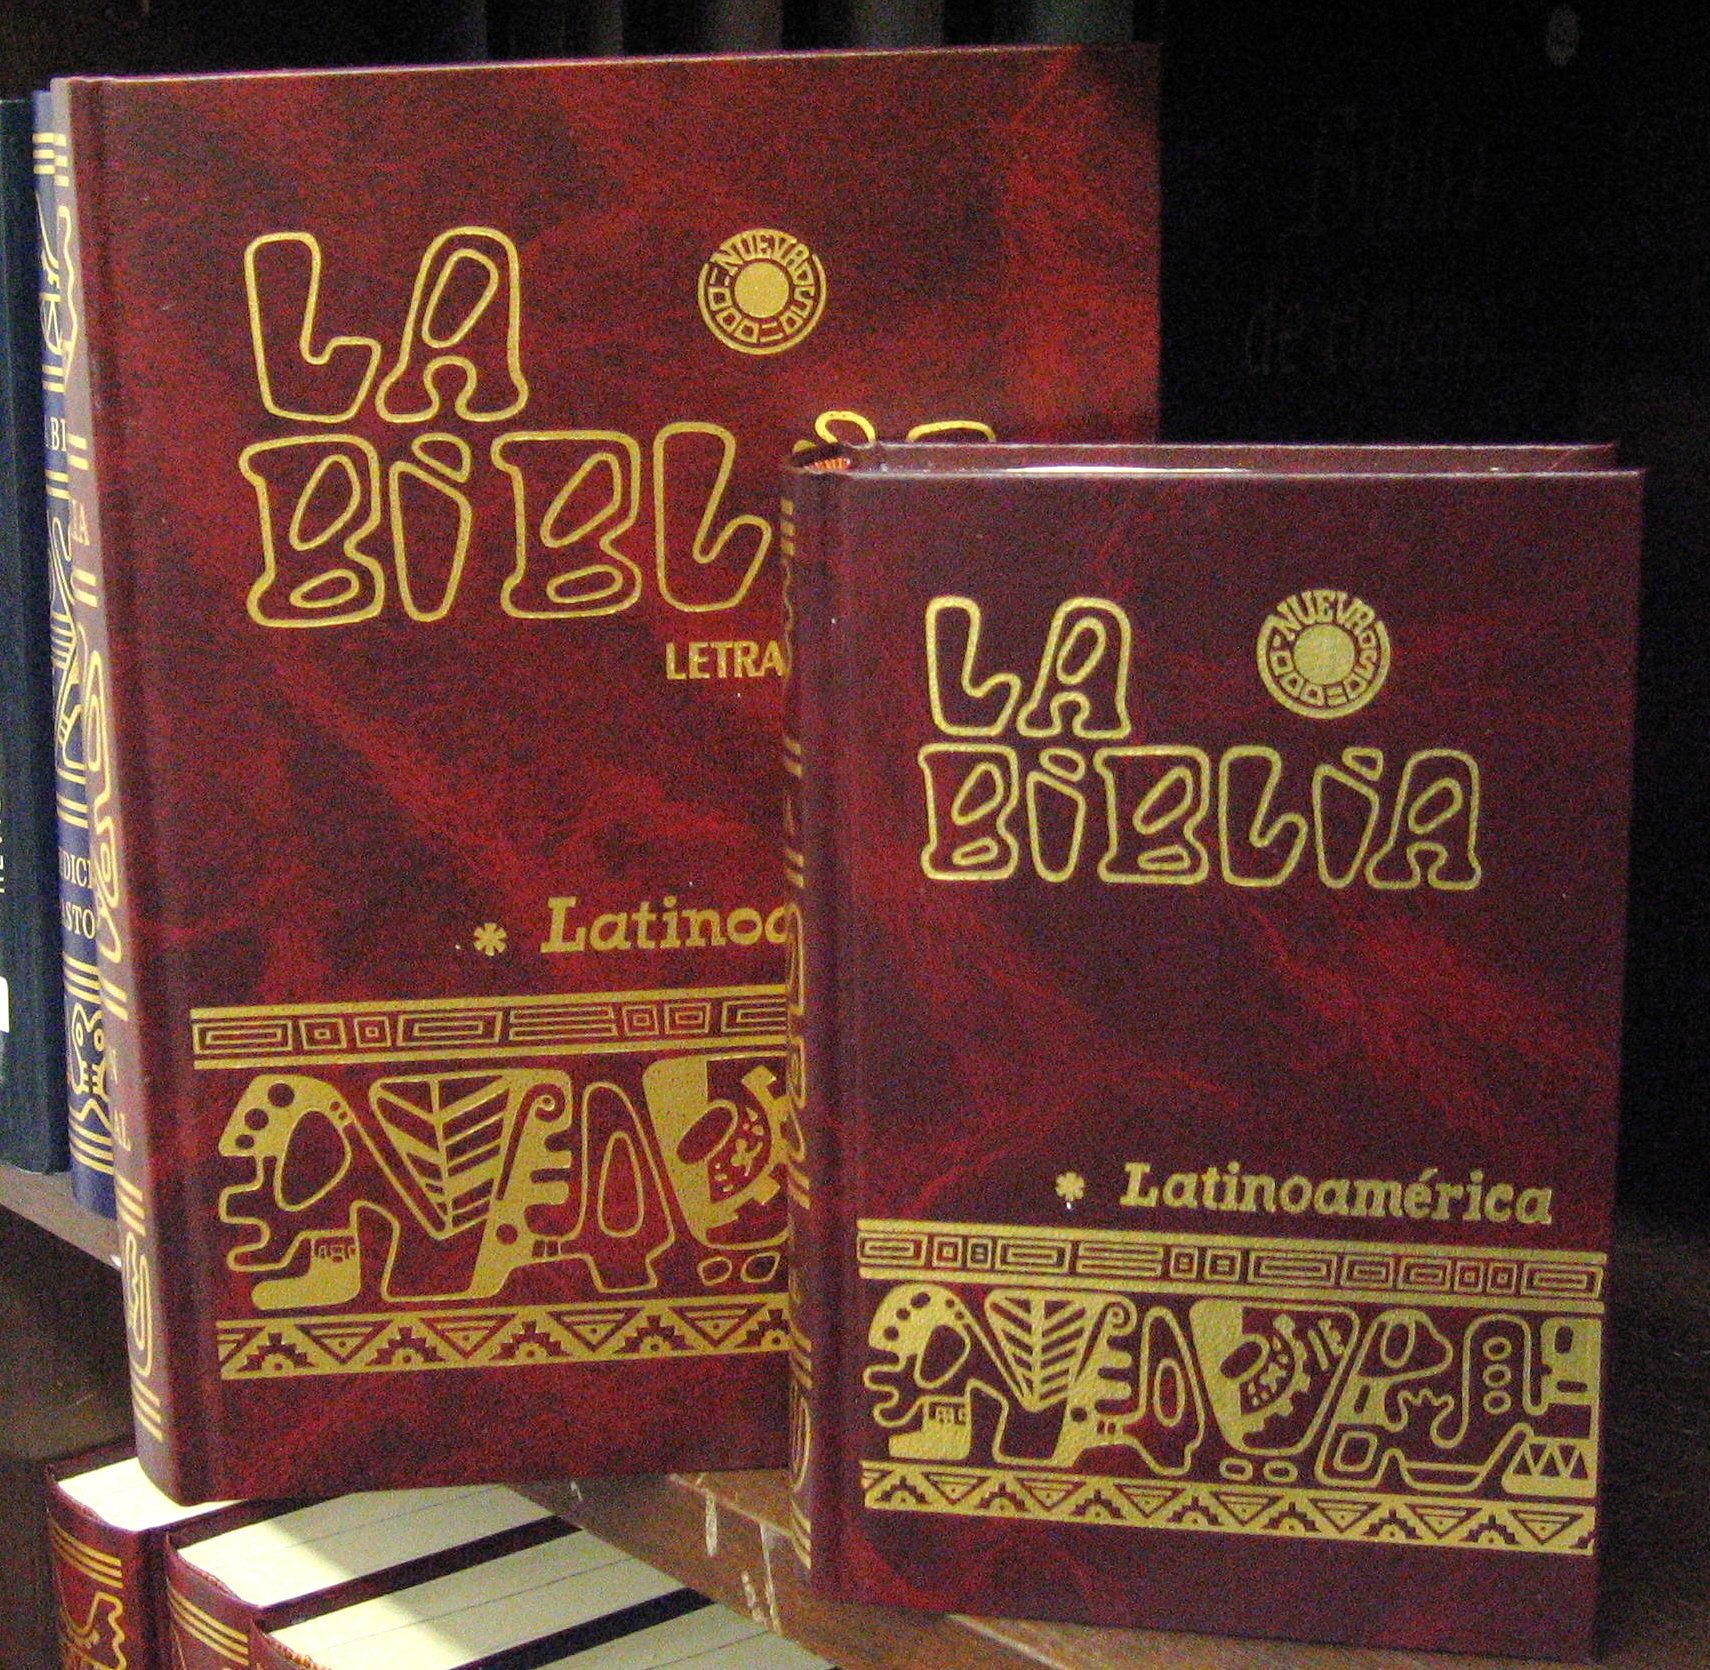 biblia catolica latinoamericana letra grande pdf